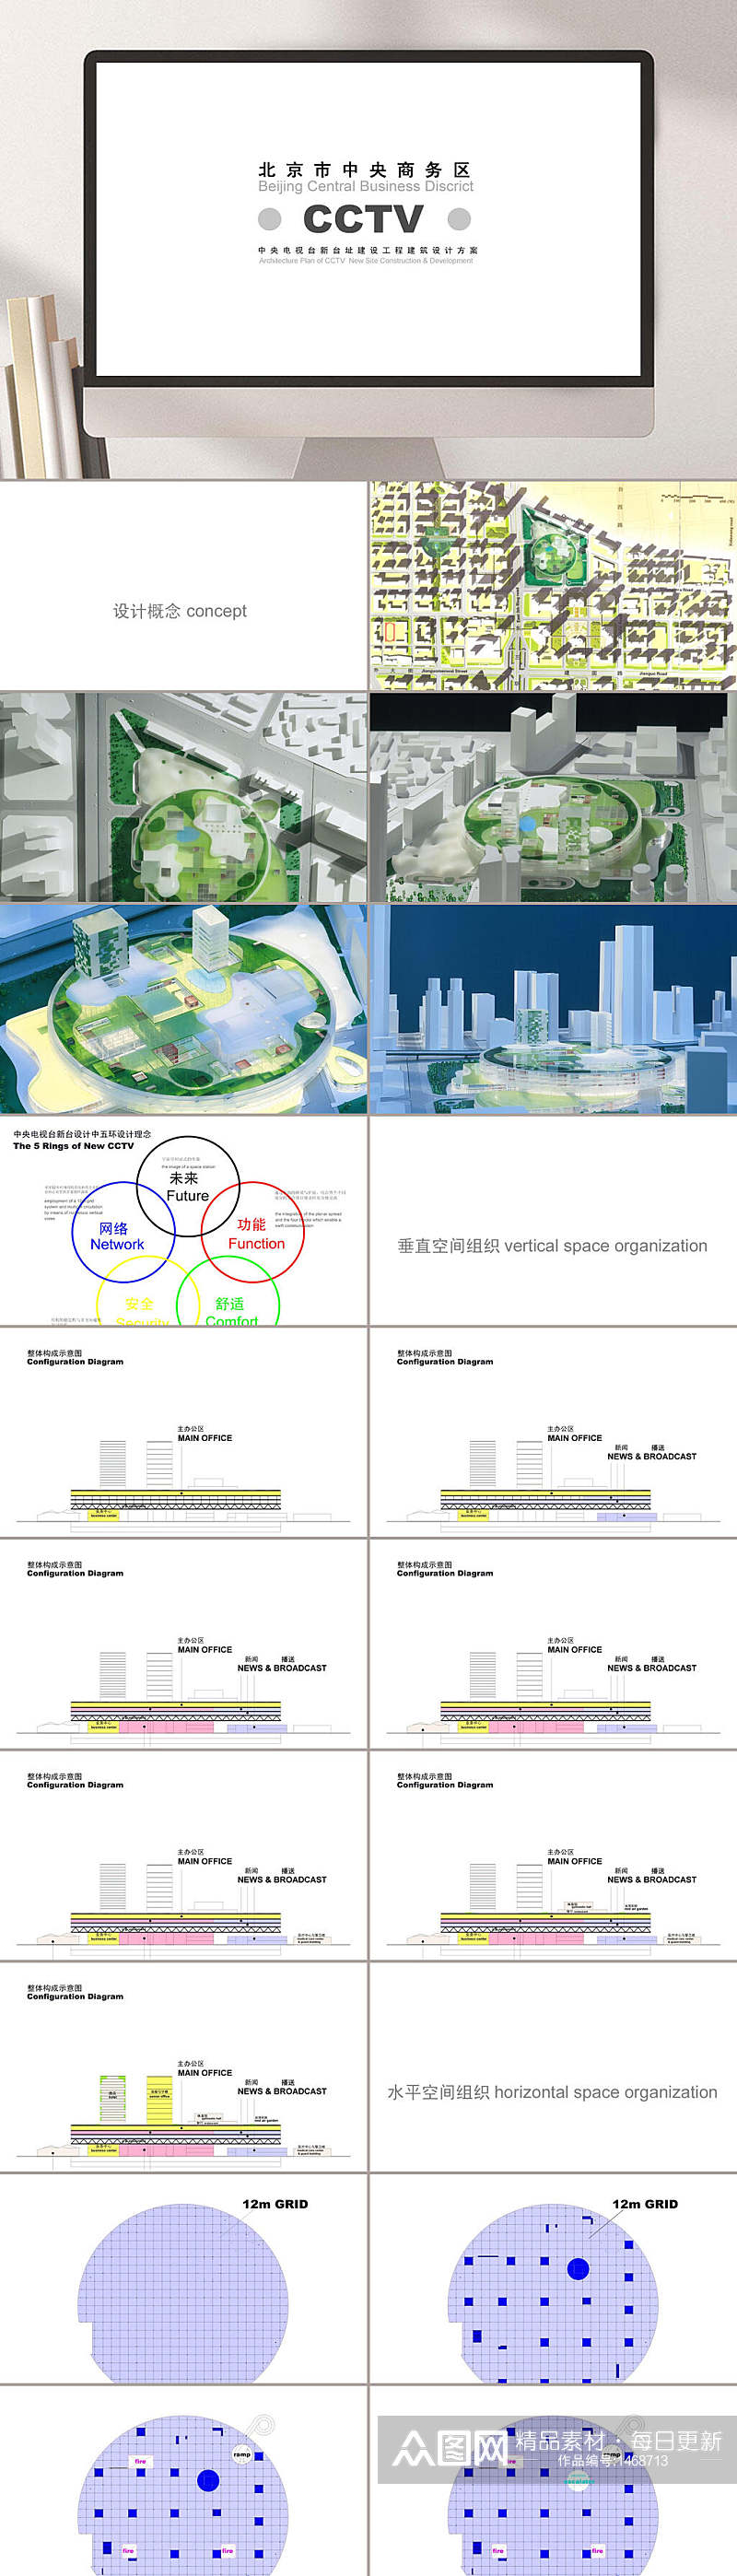 北京市中央商务区全新建筑设计模板PPT素材